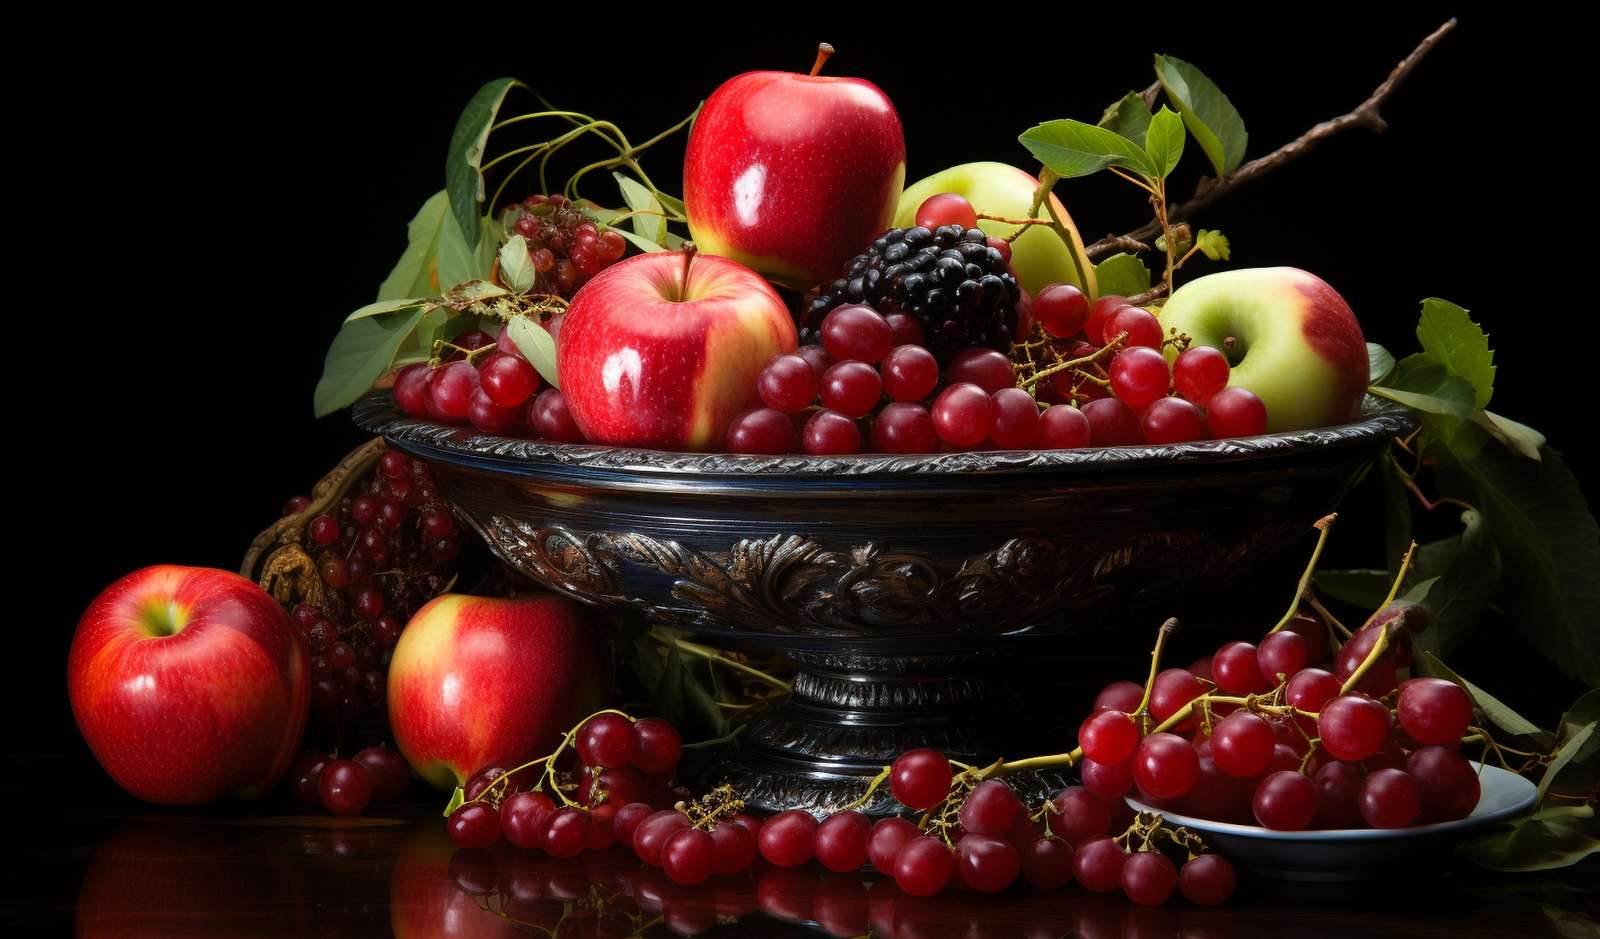 ovocné závratě cítili směs ovoce na talíři online puzzle